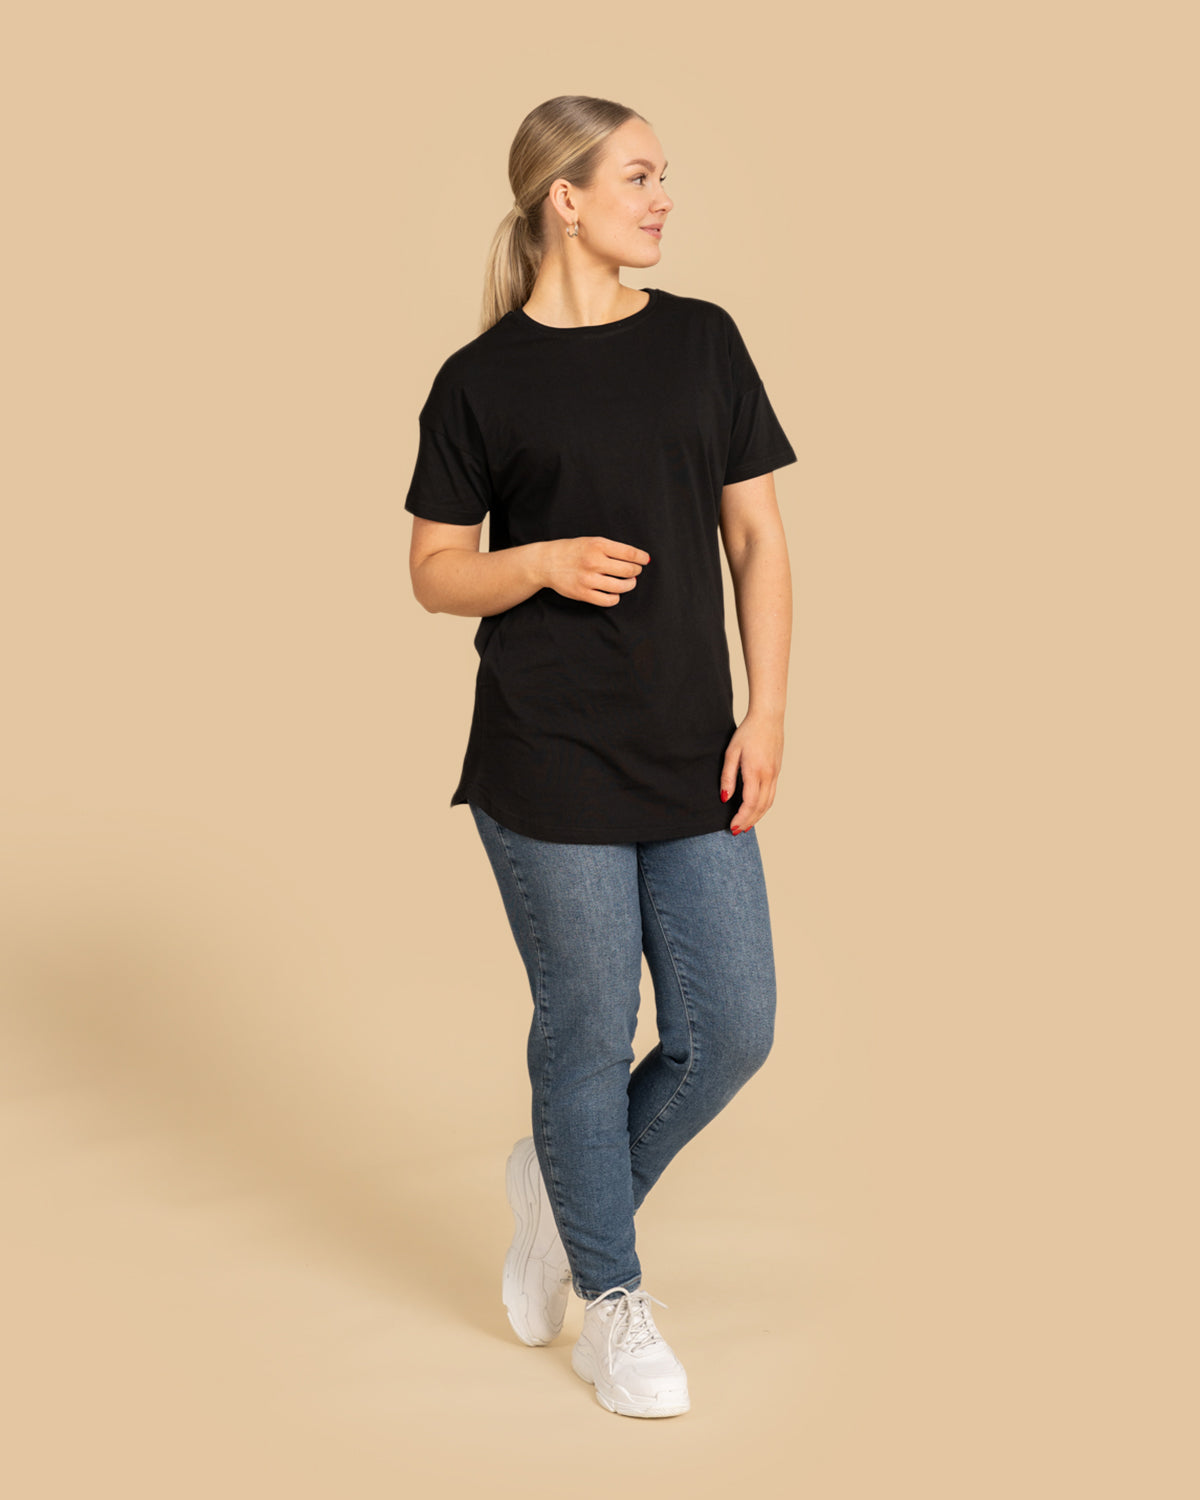 Musta Noki t-paita pidempi helma RIVA Clothing.